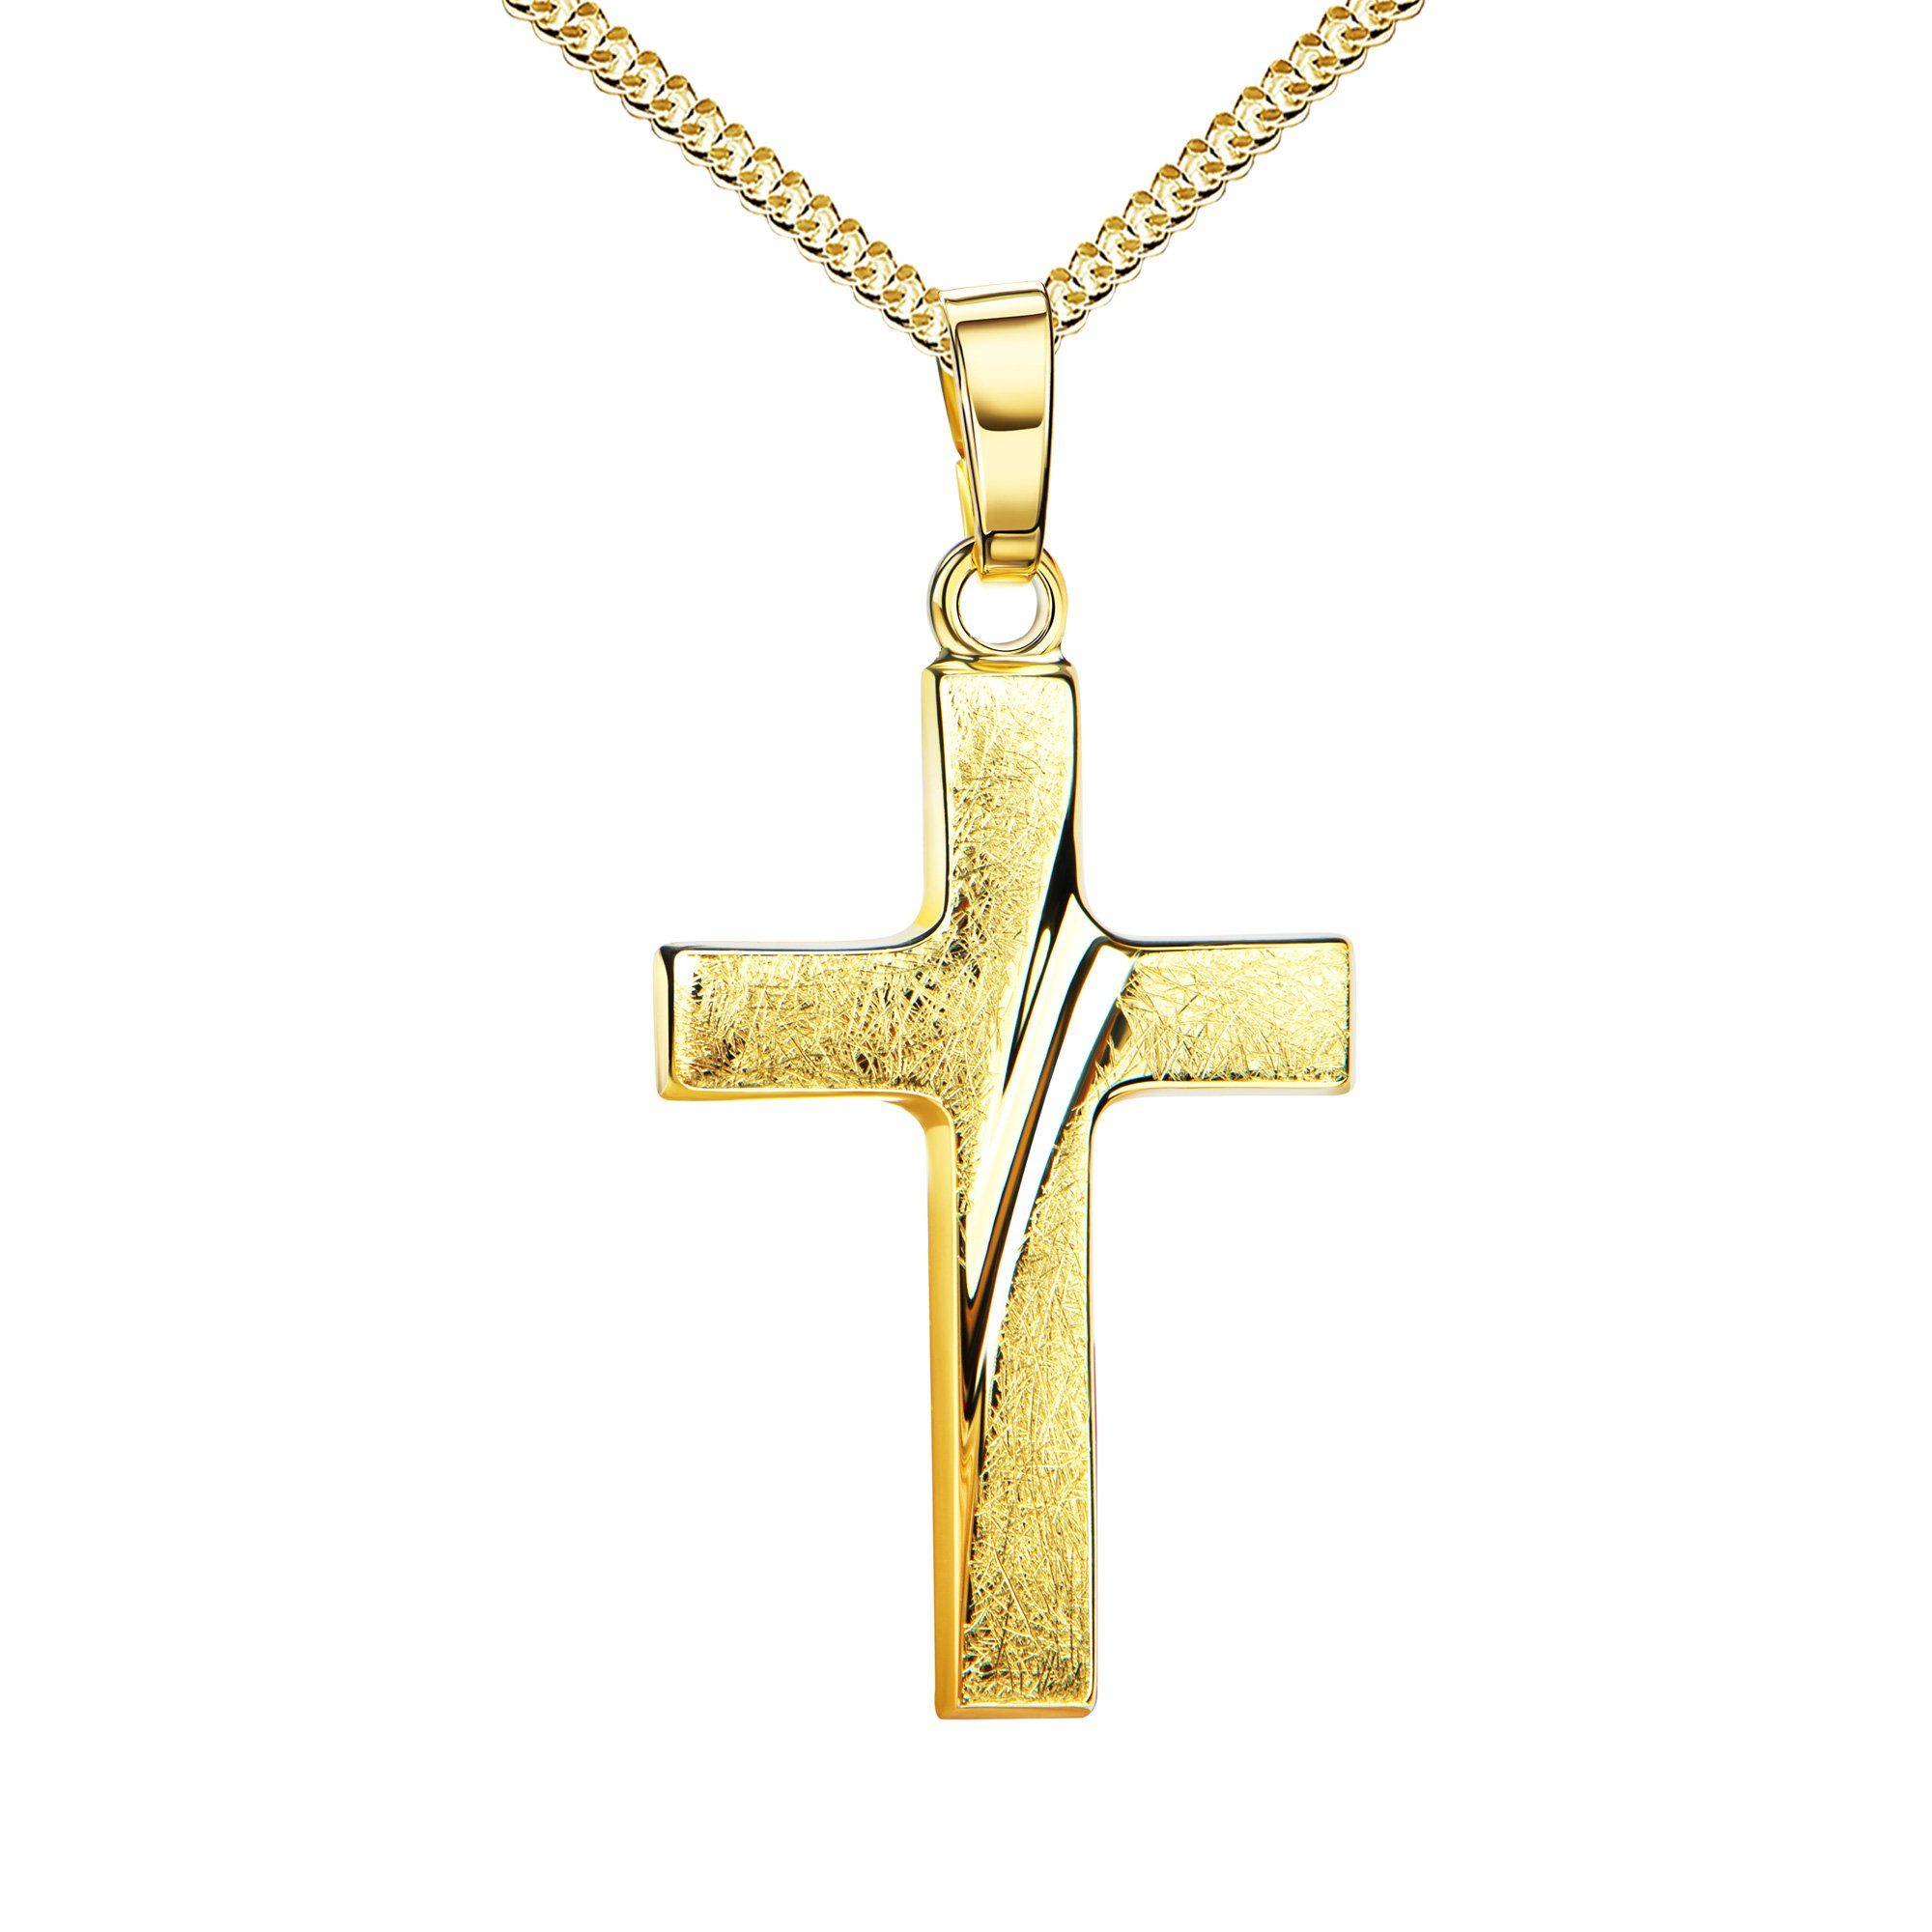 JEVELION Kreuzkette Kreuz Anhänger eismattiert 333 Gold - Made in Germany (Goldkreuz, für Damen und Herren), Mit Halskette vergoldet- Länge wählbar 36 - 70 cm.